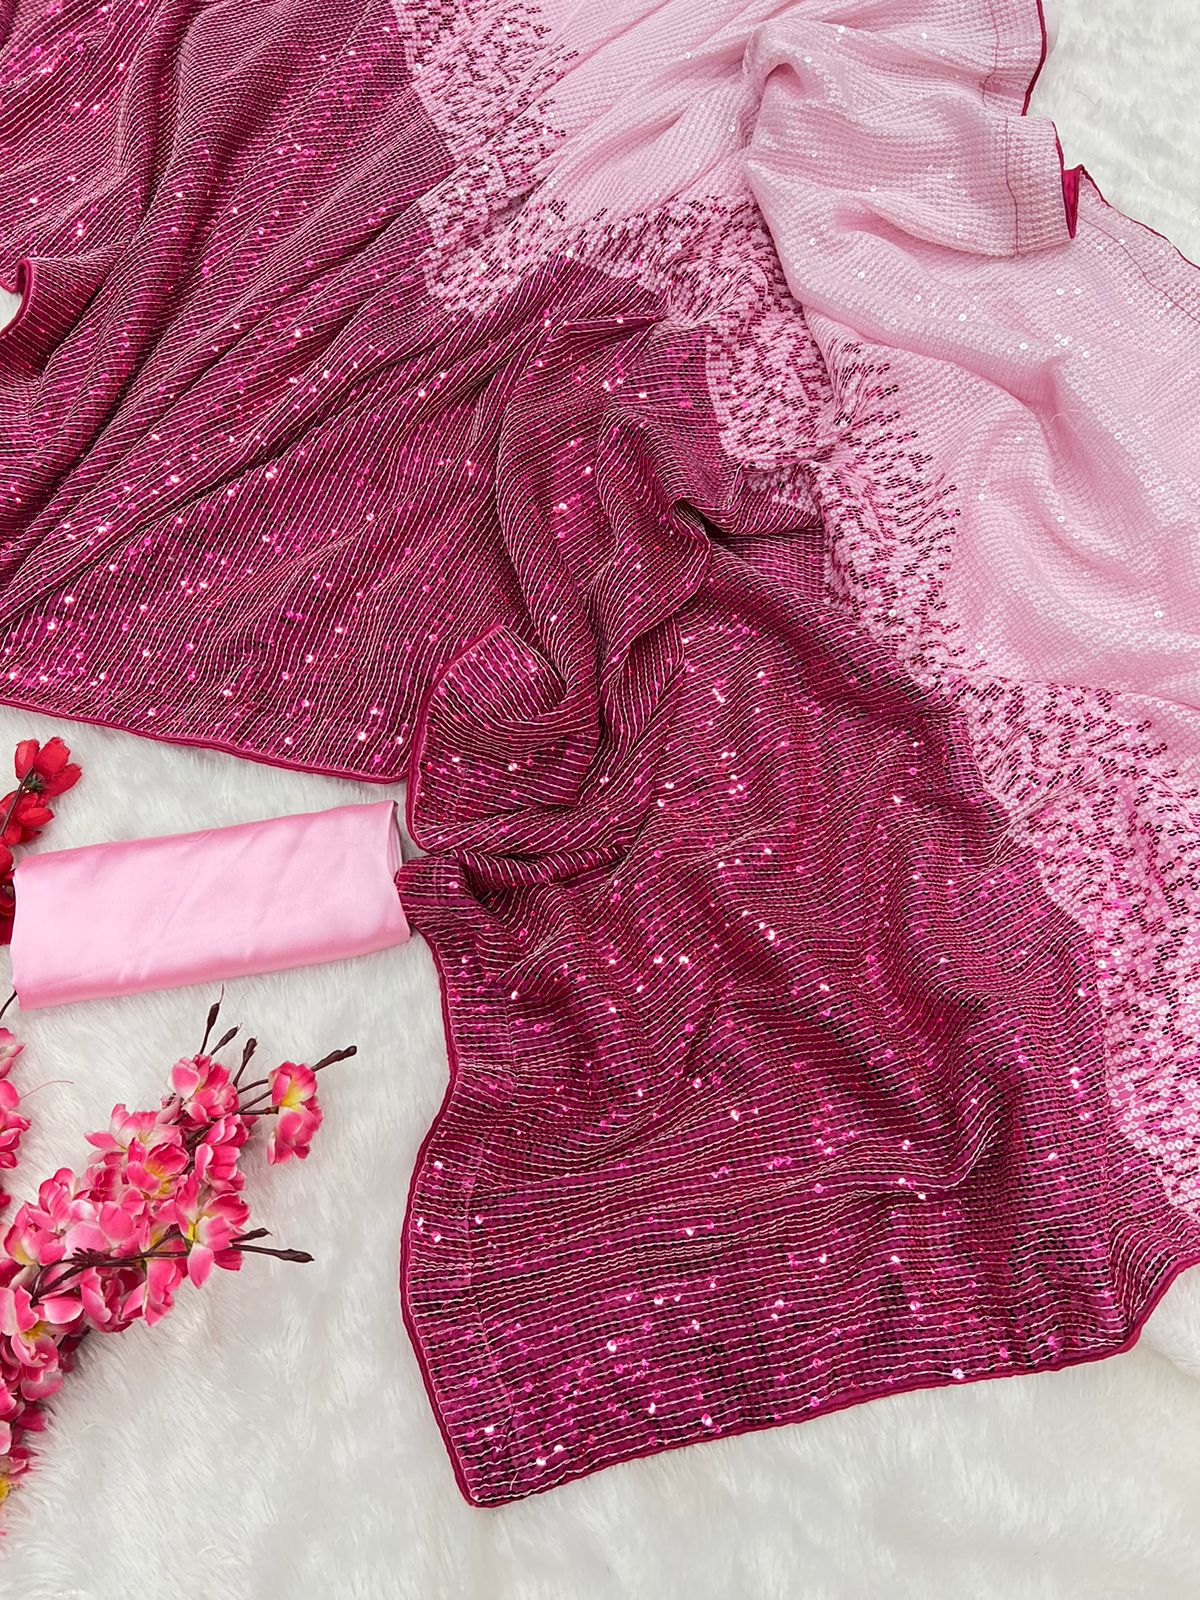 Celebrity Kajol Wear Dual Tone Pink Color Saree